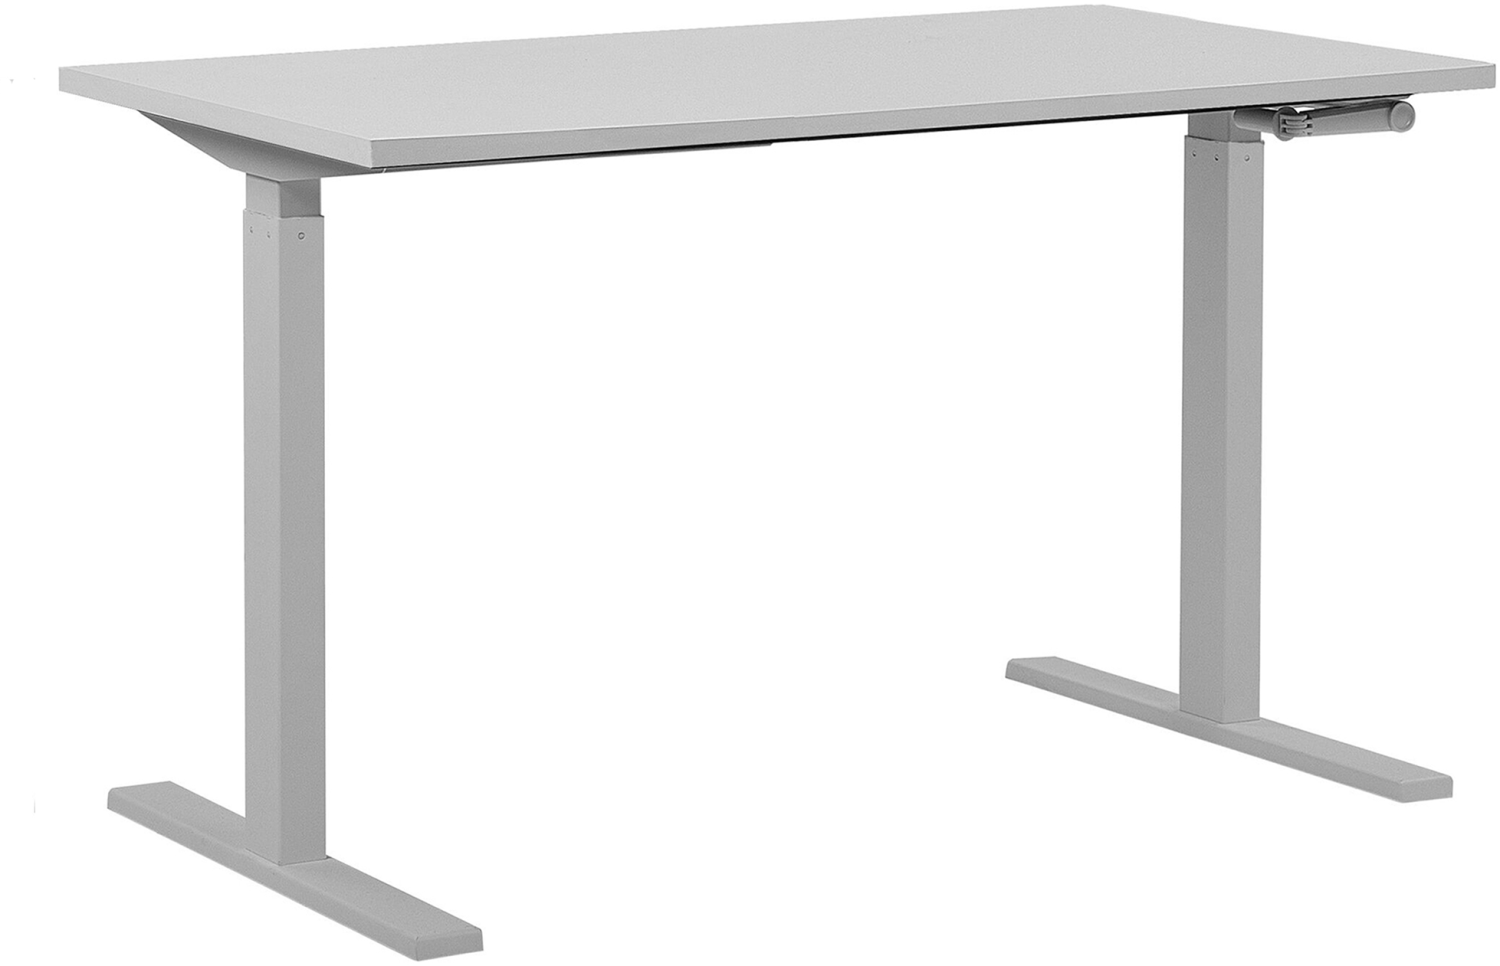 Schreibtisch manuell höhenverstellbar, Weiß, 73-113 x 130 x 72 cm Bild 1